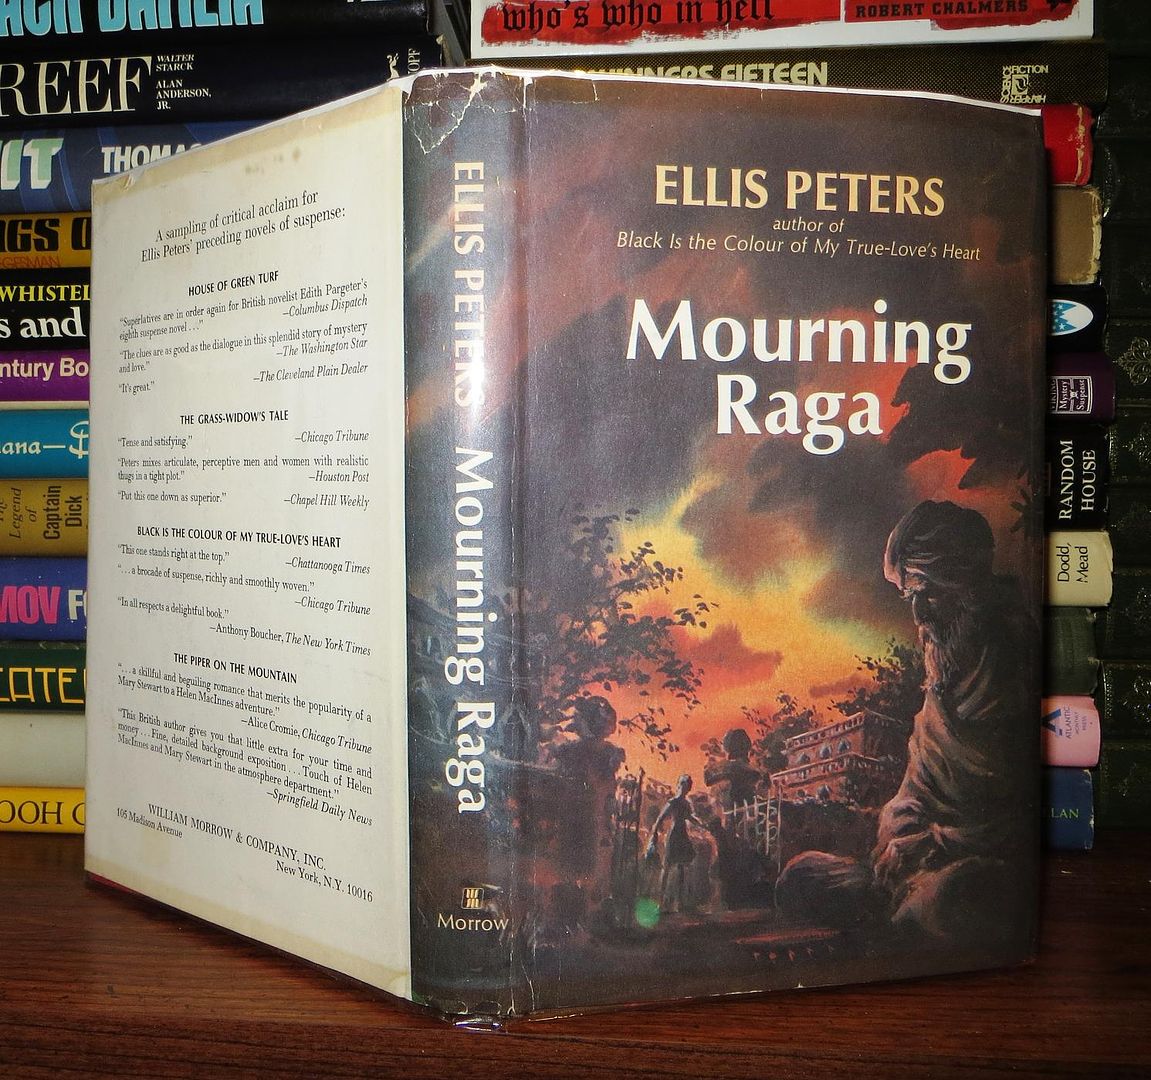 PETERS, ELLIS - Mourning Raga